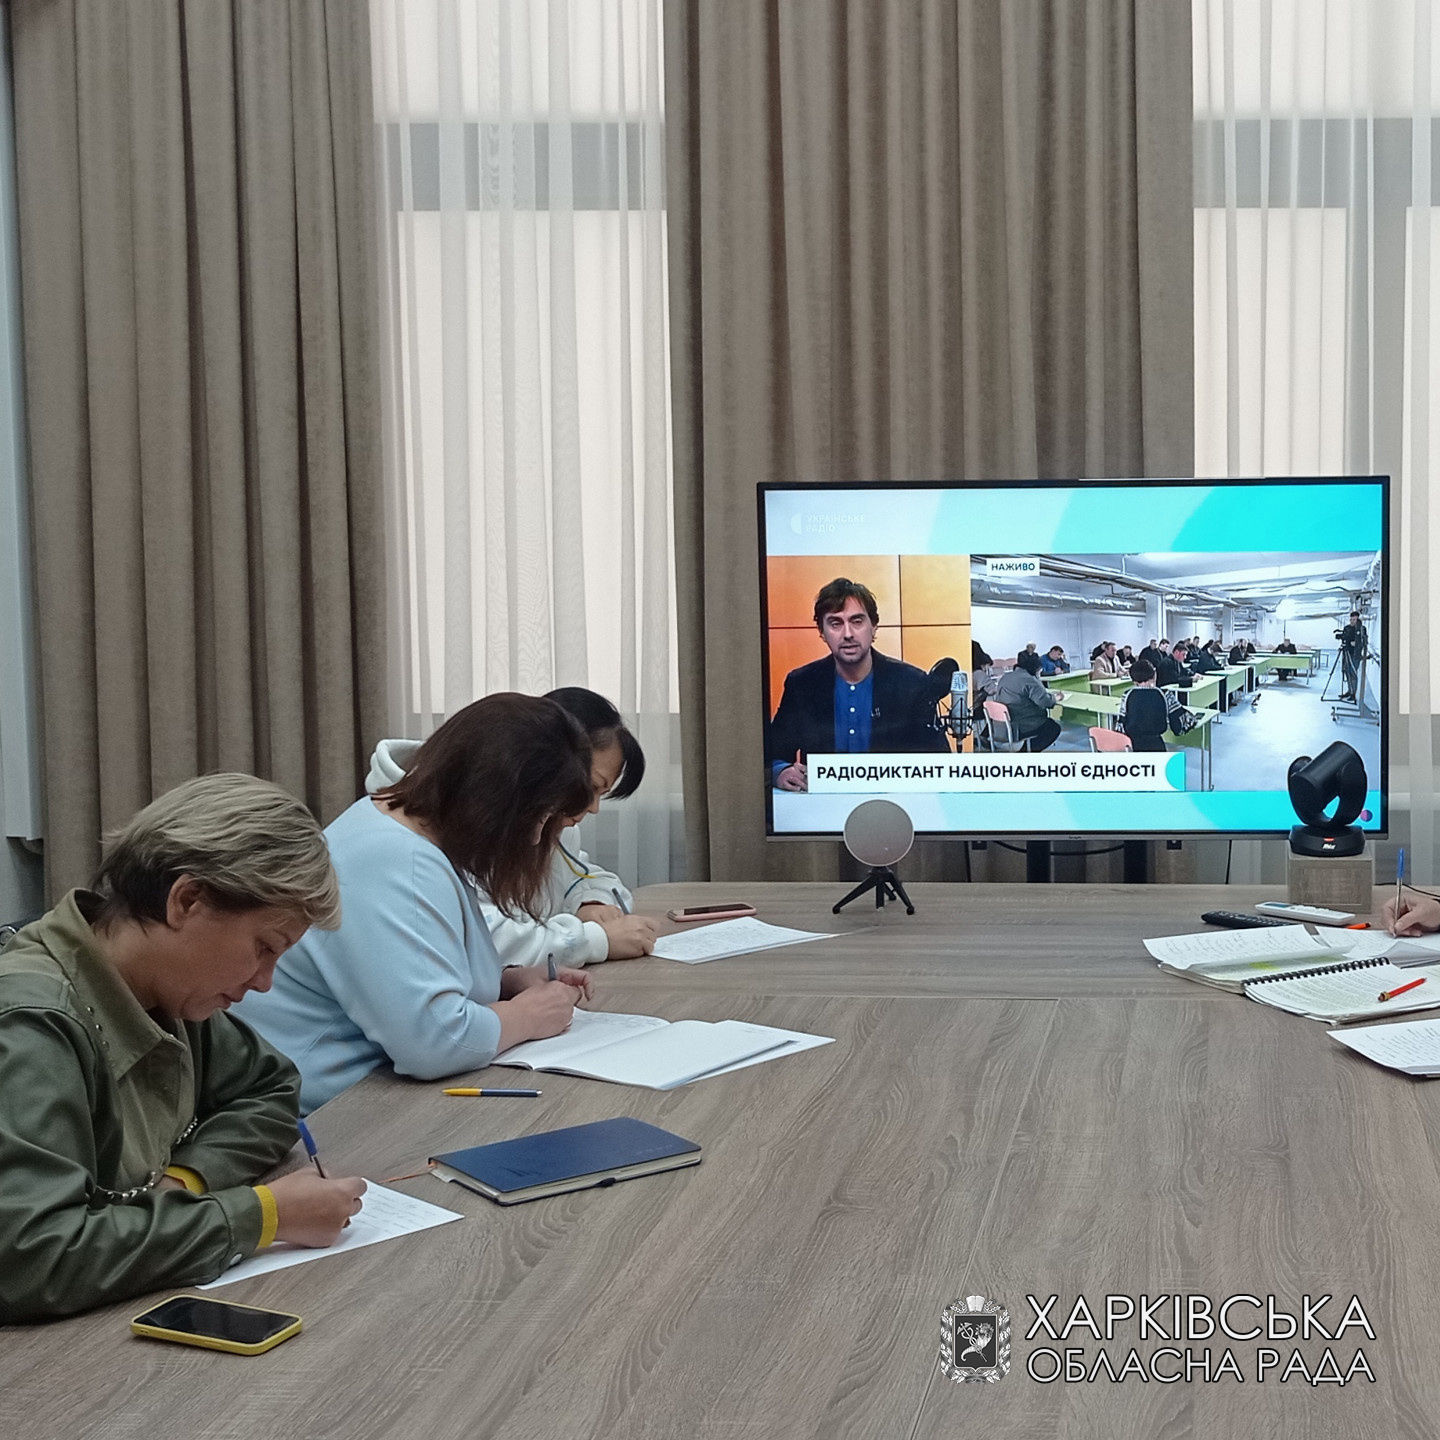 Працівники виконавчого апарату Харківської обласної ради долучились до написання радіодиктанту національної єдності